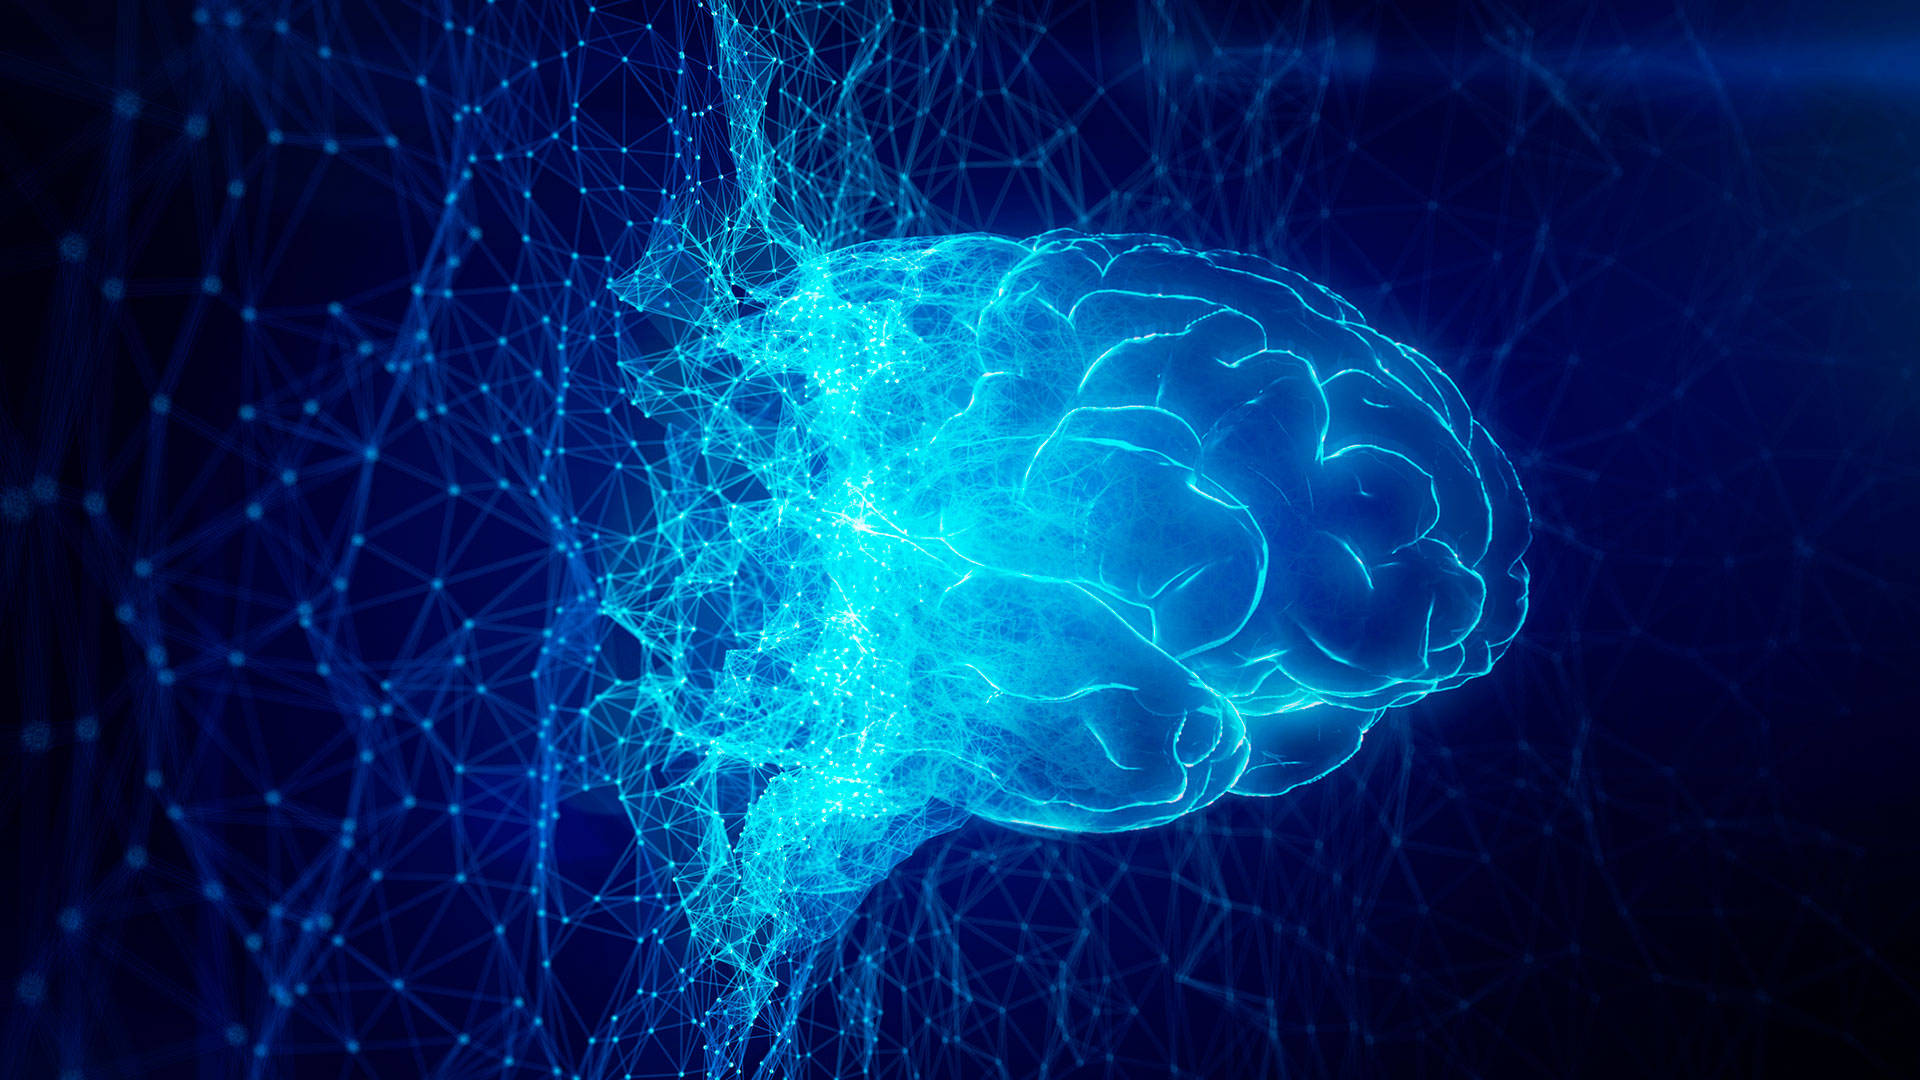 Mediante autopsias, los investigadores examinaron los cerebros de los participantes para determinar la acumulación de amiloide y tau. Ambas proteínas patológicas se encuentran en el cerebro de las personas diagnosticadas de Alzheimer, pero también es posible detectaros en personas de edad avanzada y cognitivamente sanas (Getty Images)